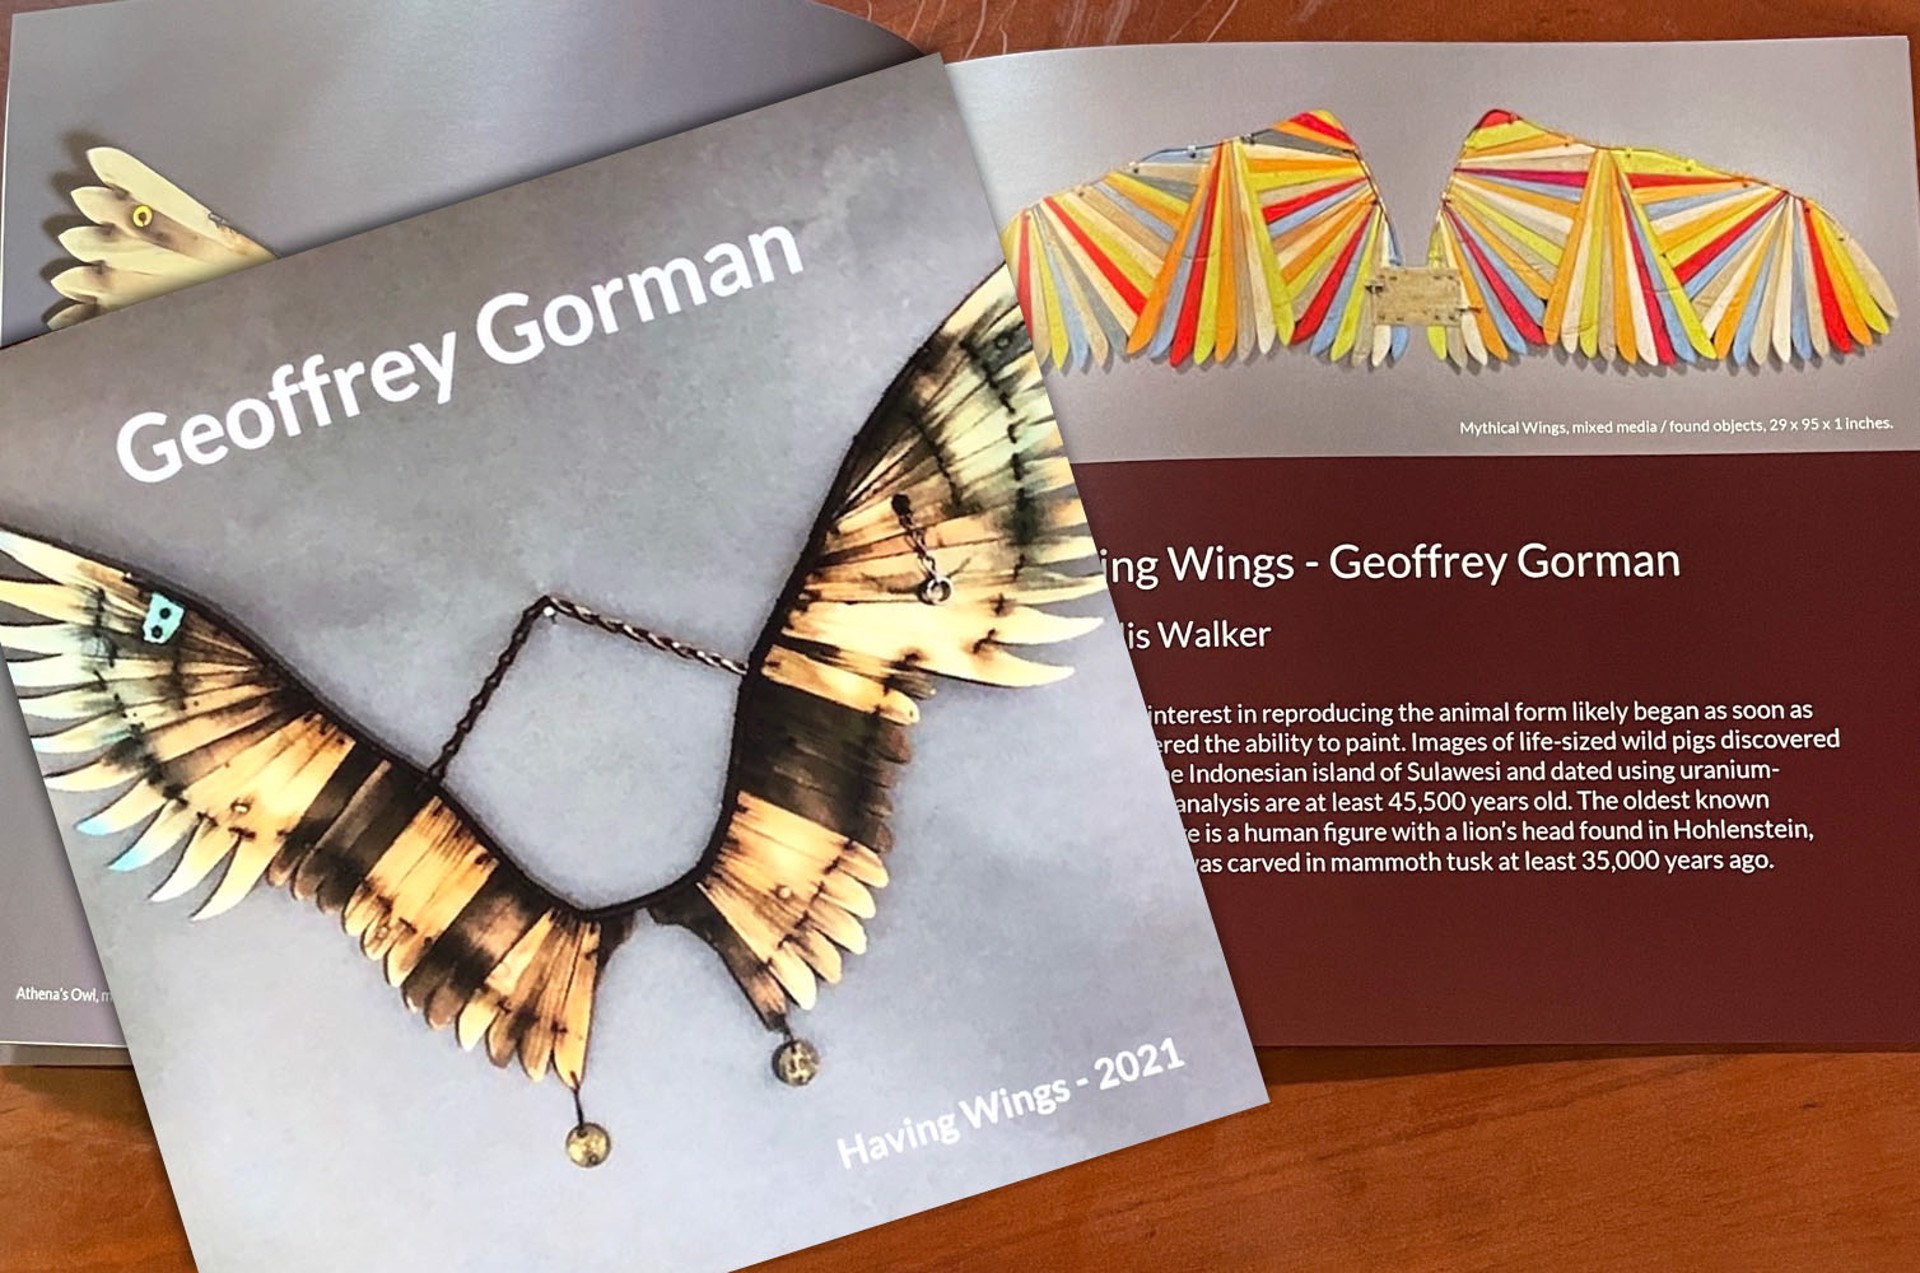 Geoffrey Gorman, Having Wings catalog by Geoffrey Gorman